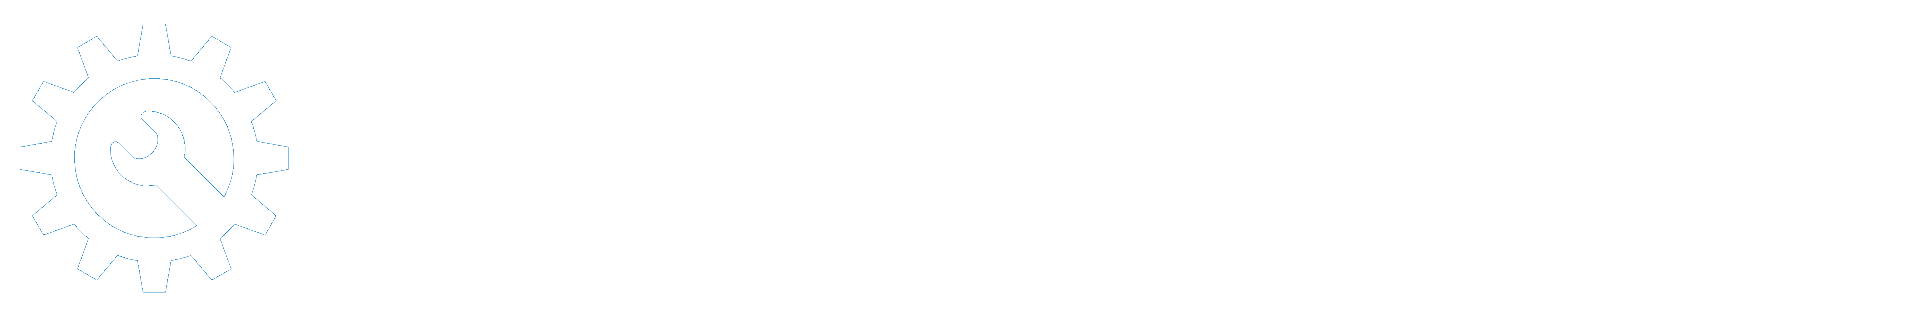 I-EM Delft Campus logo